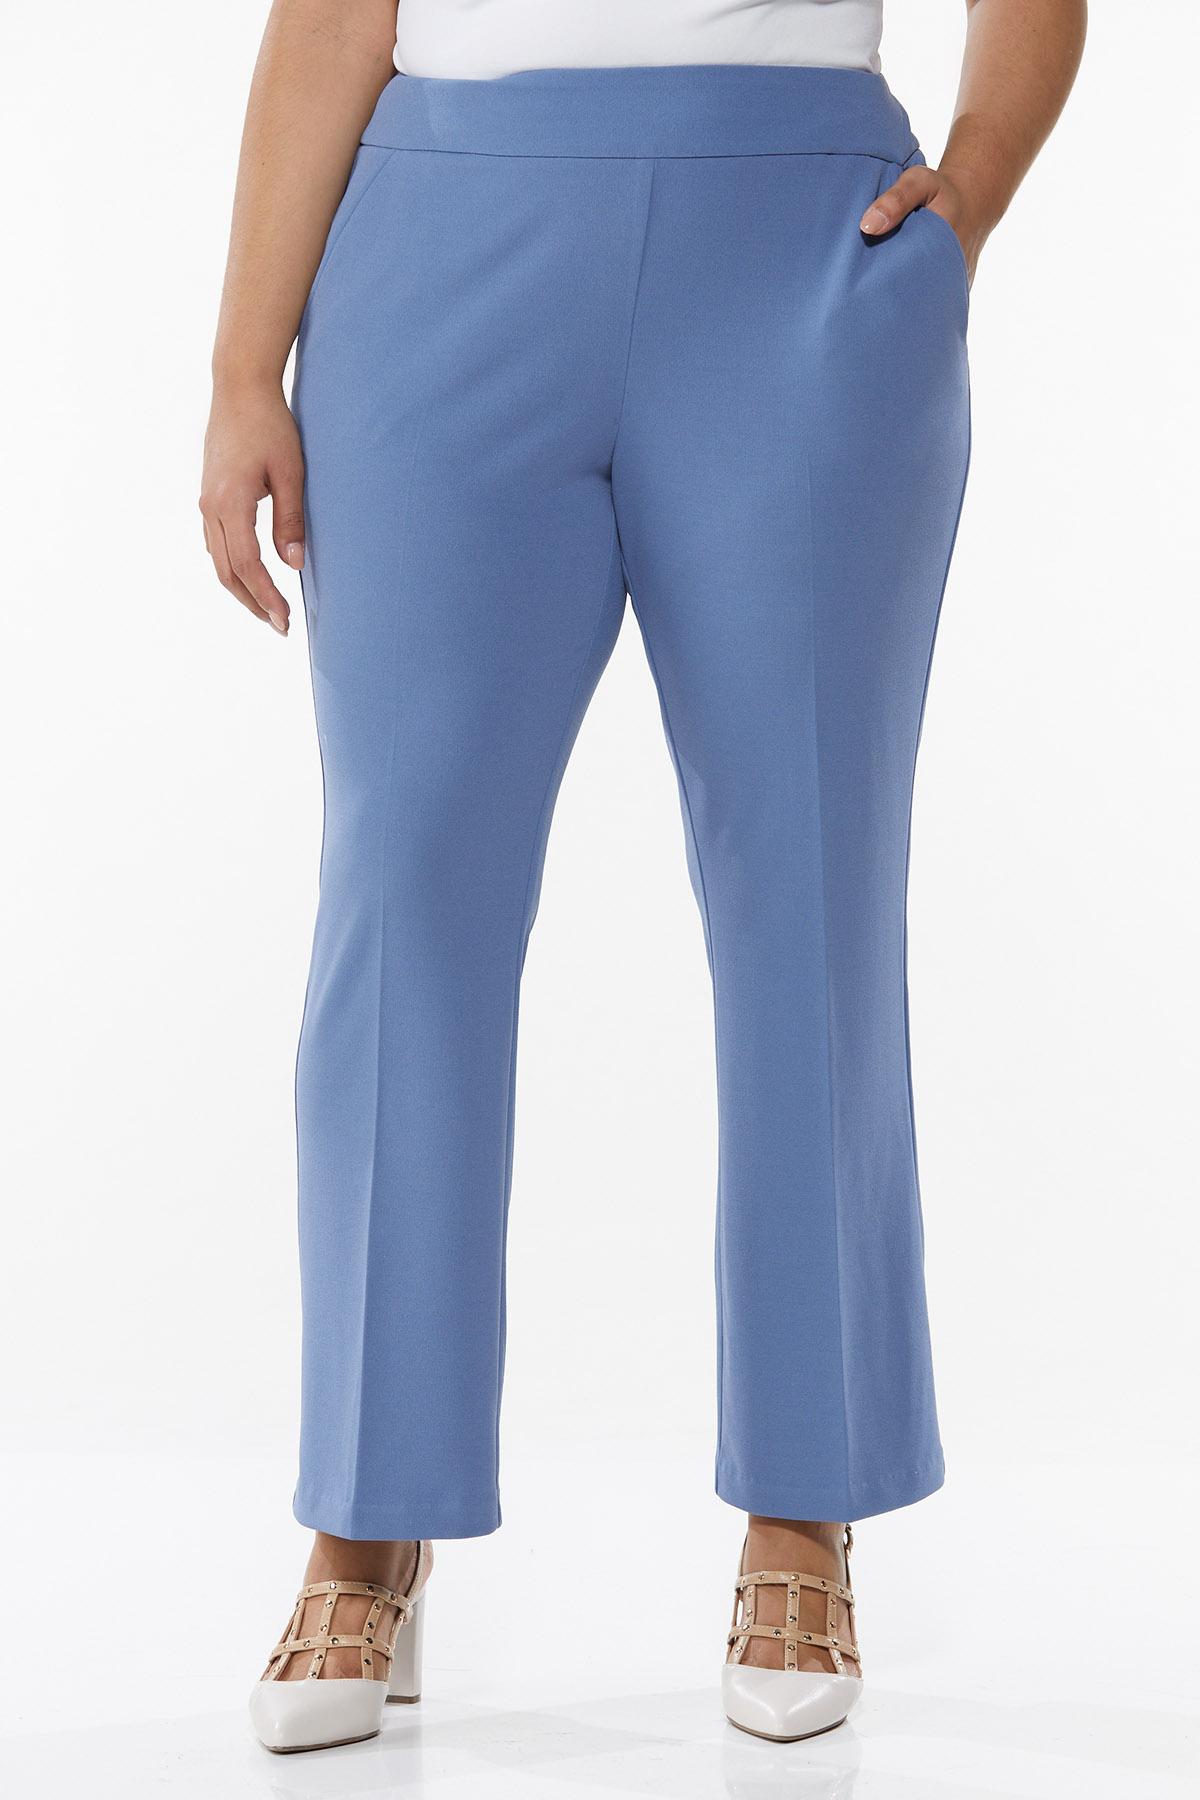 Plus Size Blue Flare Trouser Pants